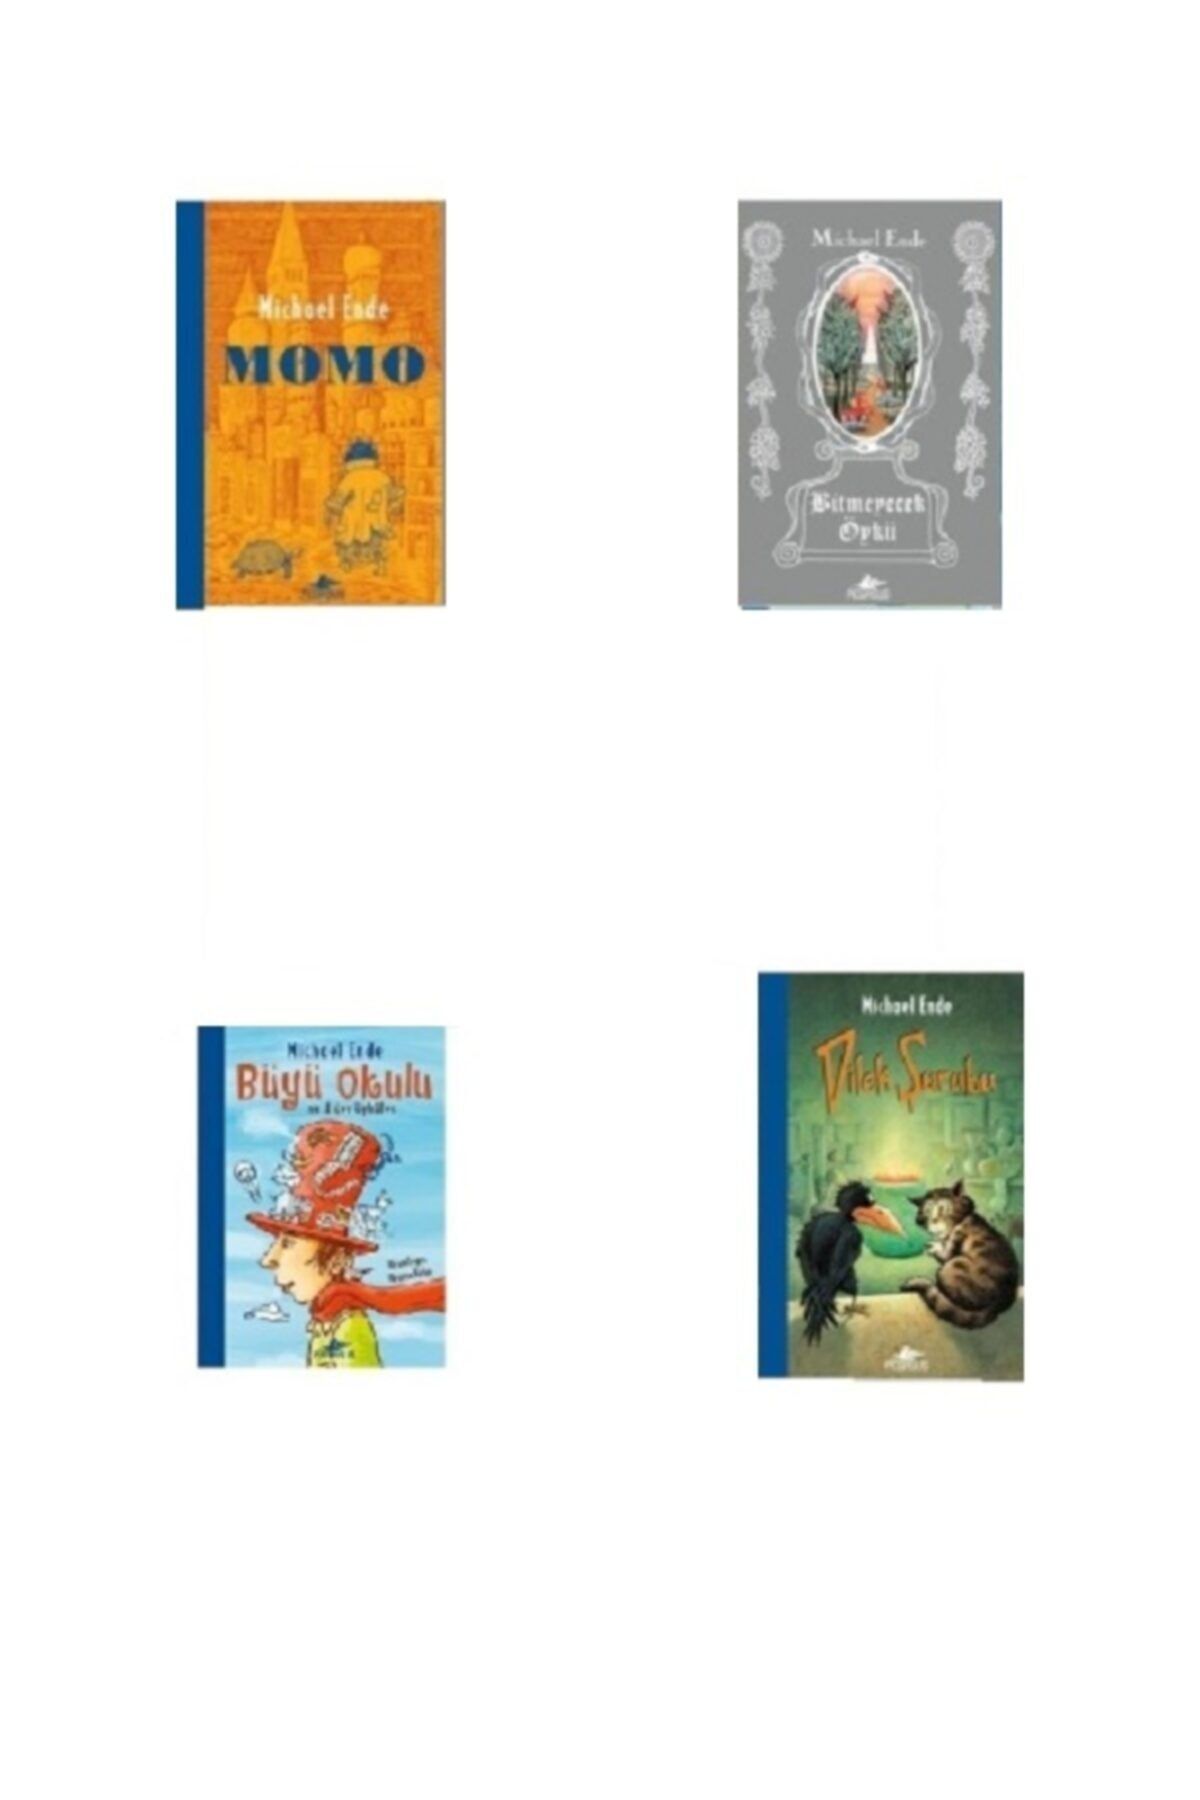 Kabalcı Yayınevi Momo - Bitmeyecek Öykü - Dilek Şurubu - Büyü Okulu - 4 Kitap Set / Michael Ende